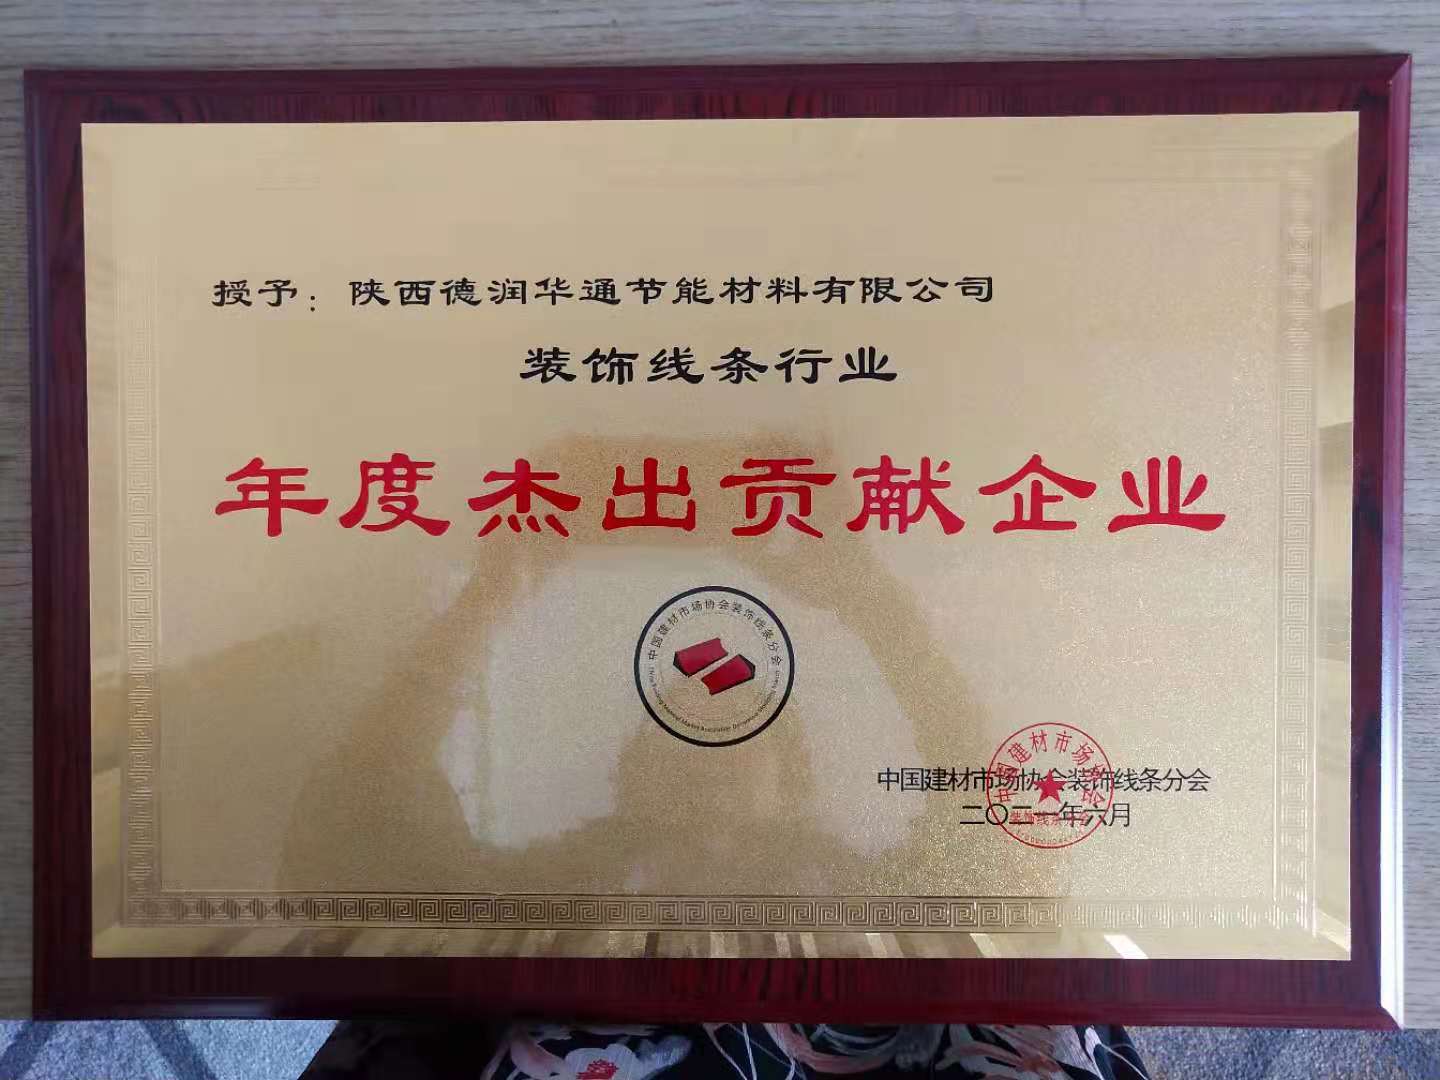 獲得“中國建材協會裝飾線條分會”年度杰出貢獻獎